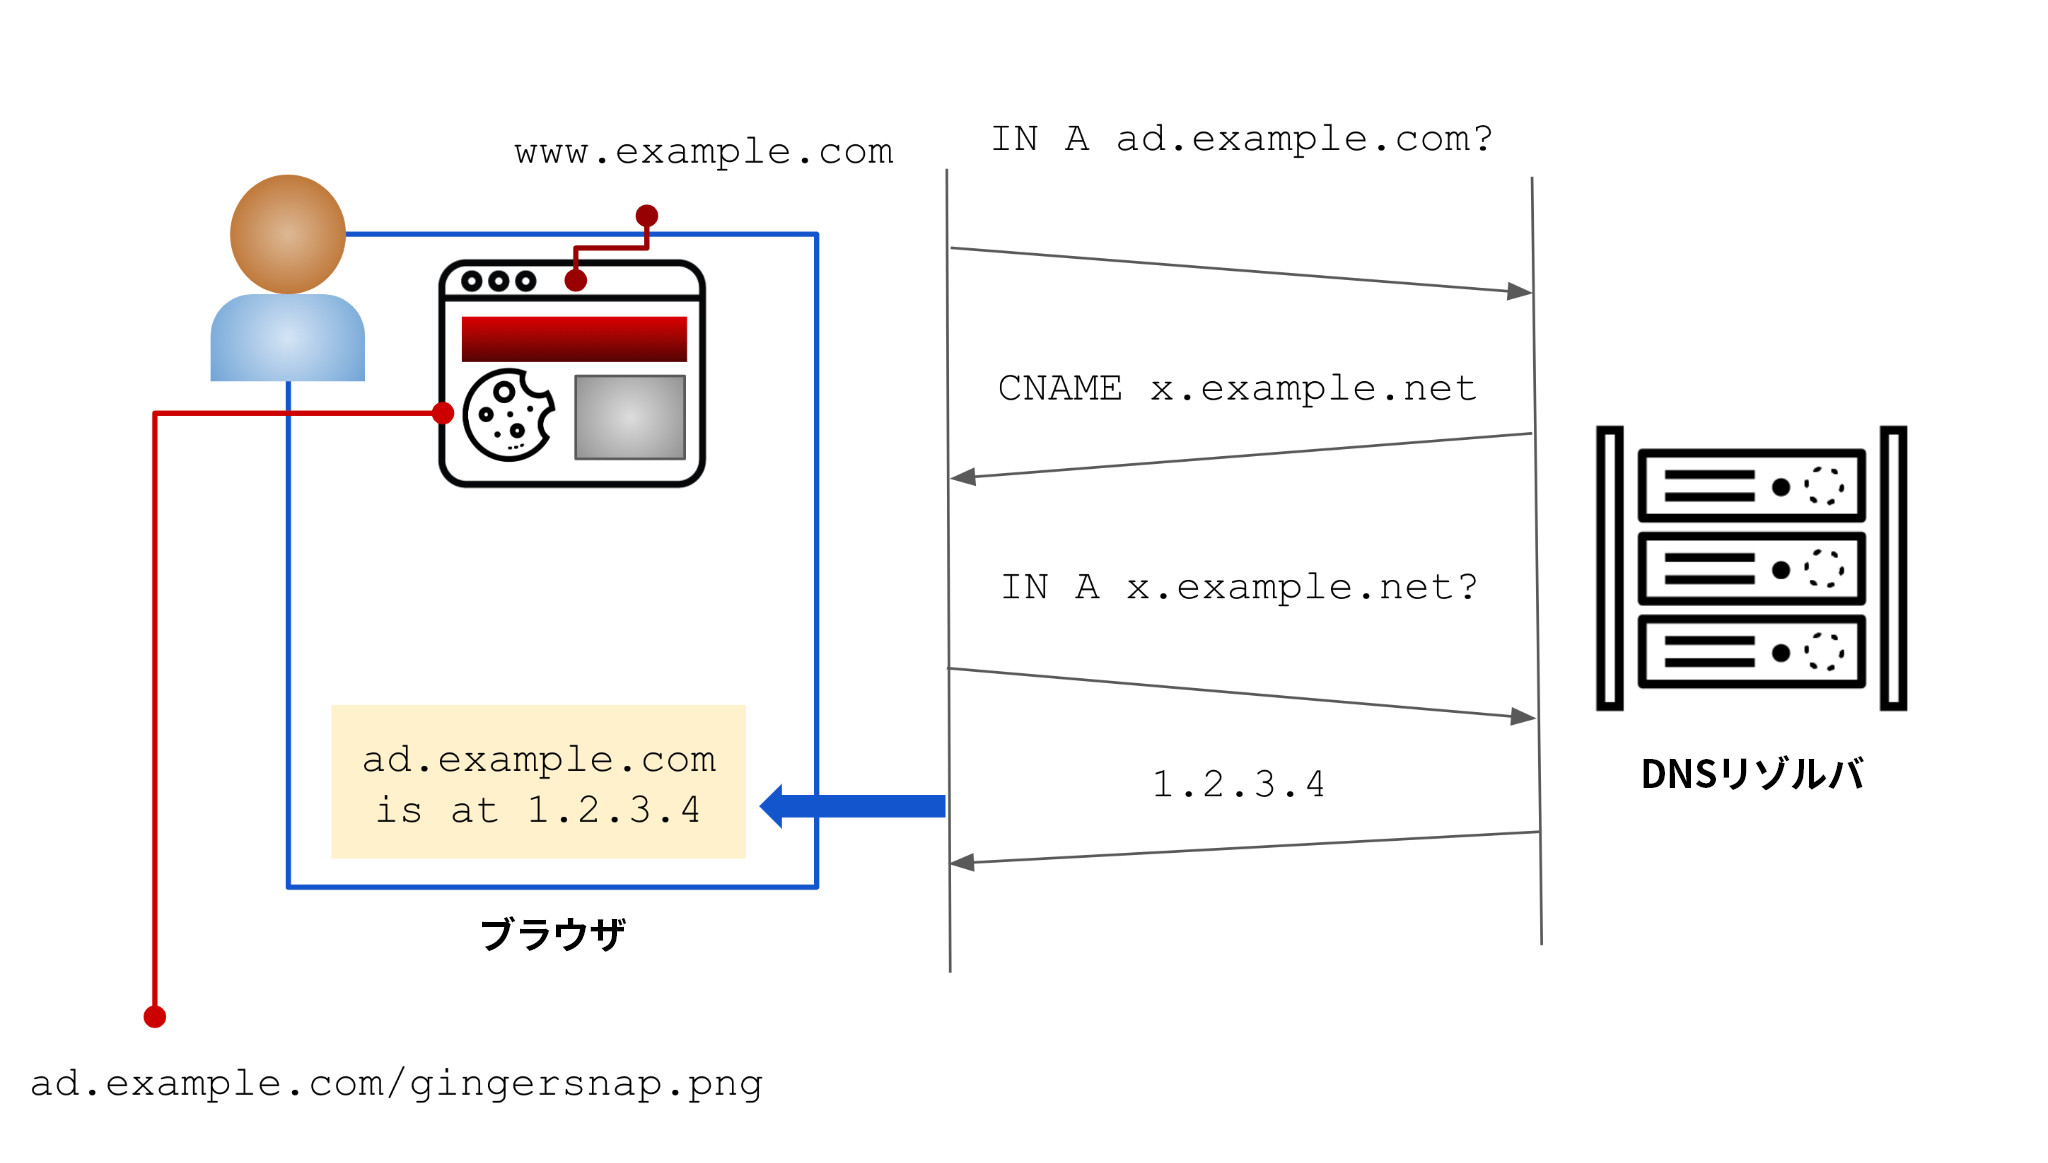 この図のユーザーはwww[.]example[.]comを閲覧している。サイトに埋め込まれた広告はx[.]example[.]netにあるが、Webサイト所有者がIPアドレス1.2.3[.]4に解決するCNAMEレコードを作成していることから、この追跡活動は隠蔽されてしまう